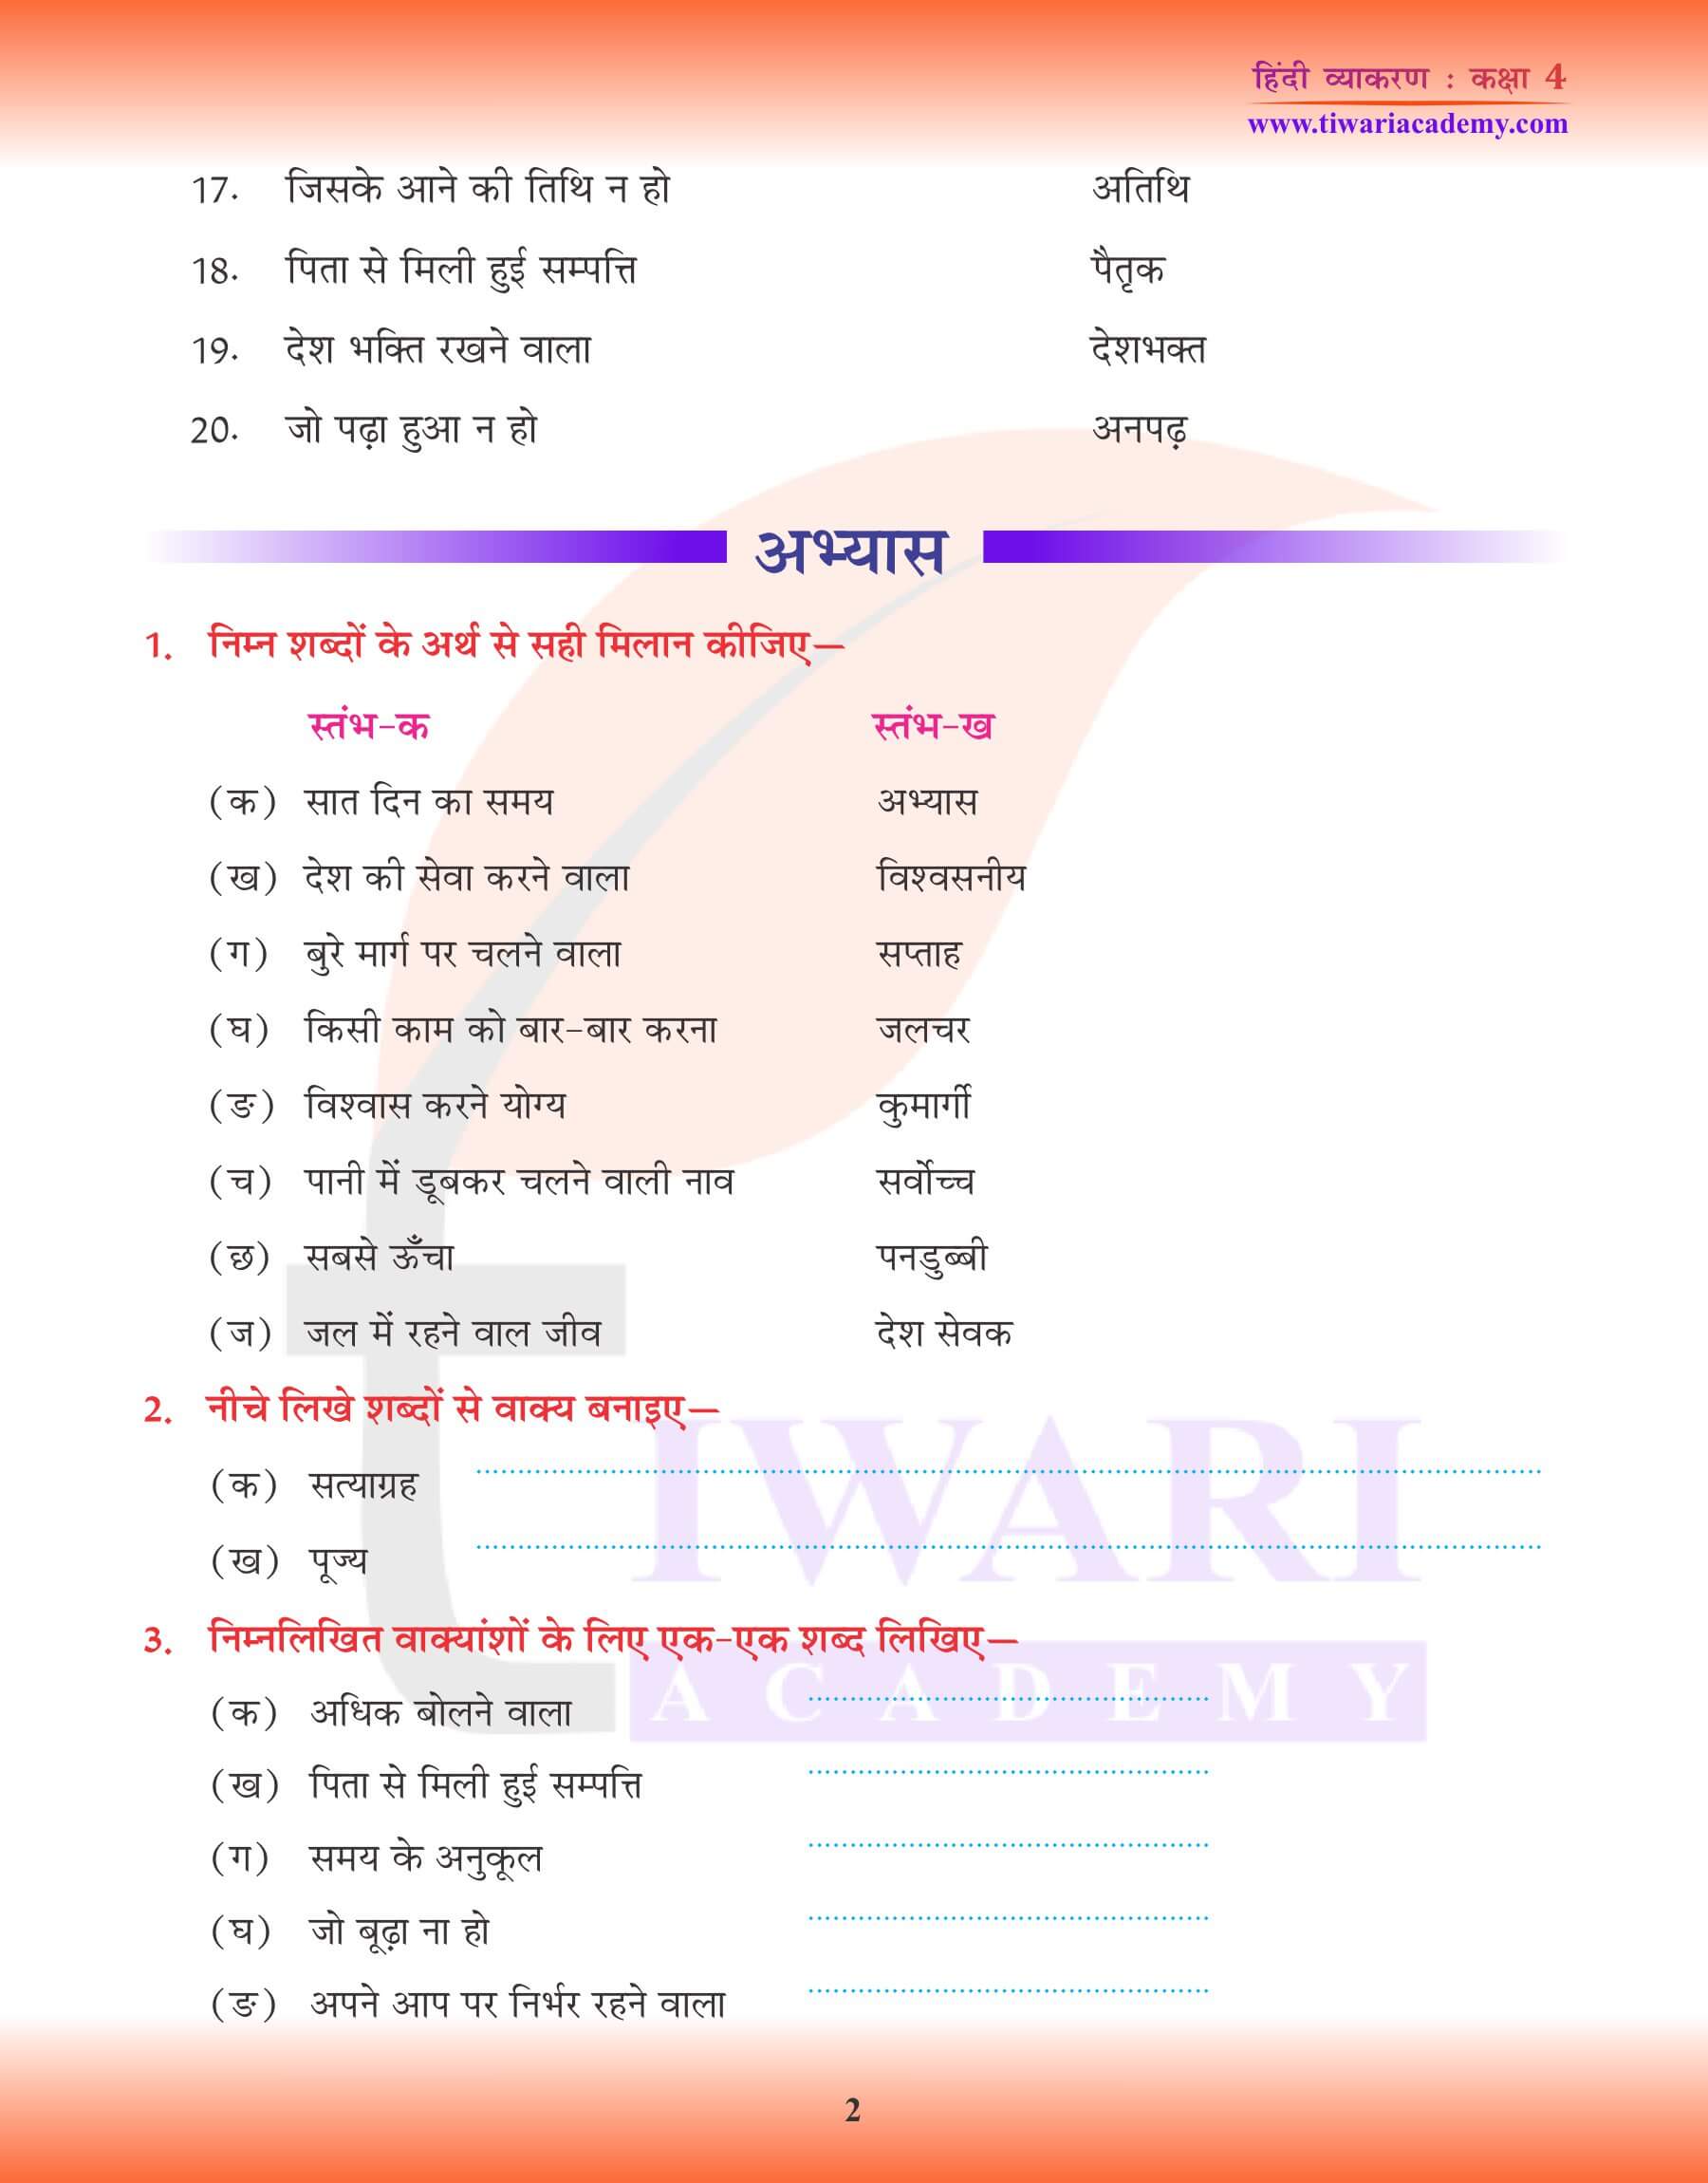 कक्षा 4 हिंदी व्याकरण में अनेक शब्दों के लिए एक शब्द